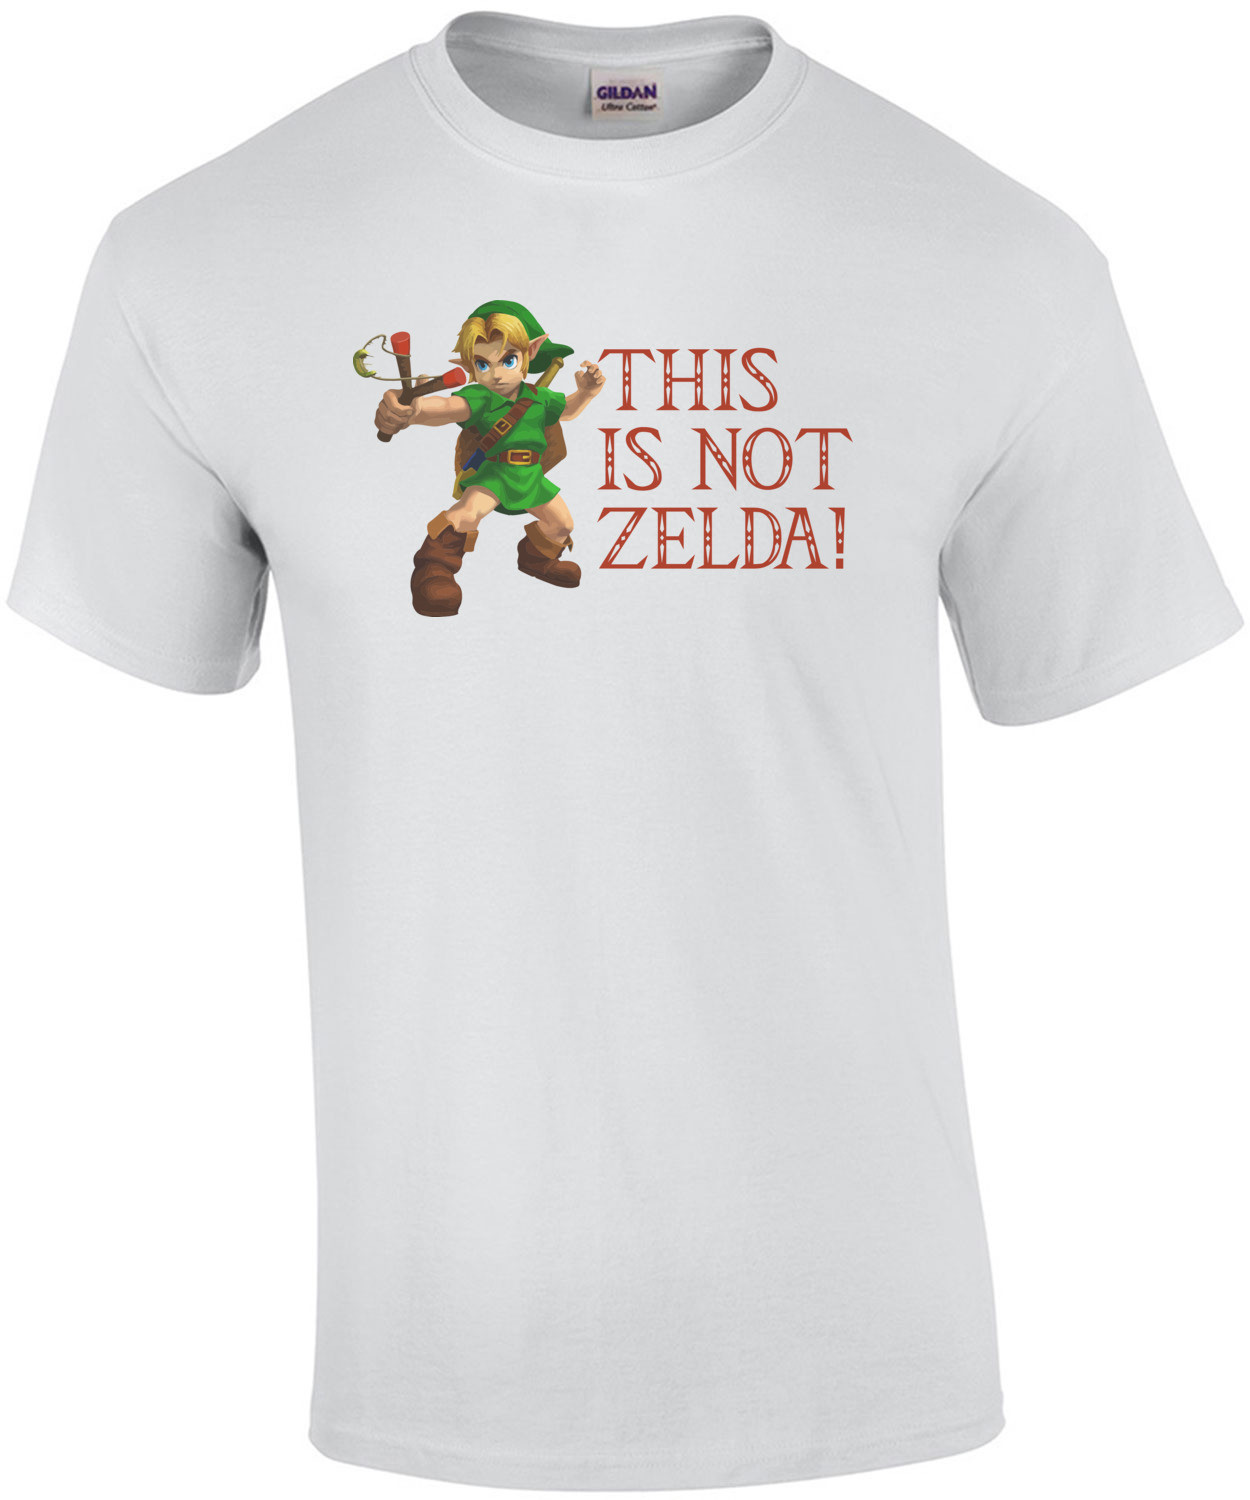 This Is Not Zelda Shirt shirt